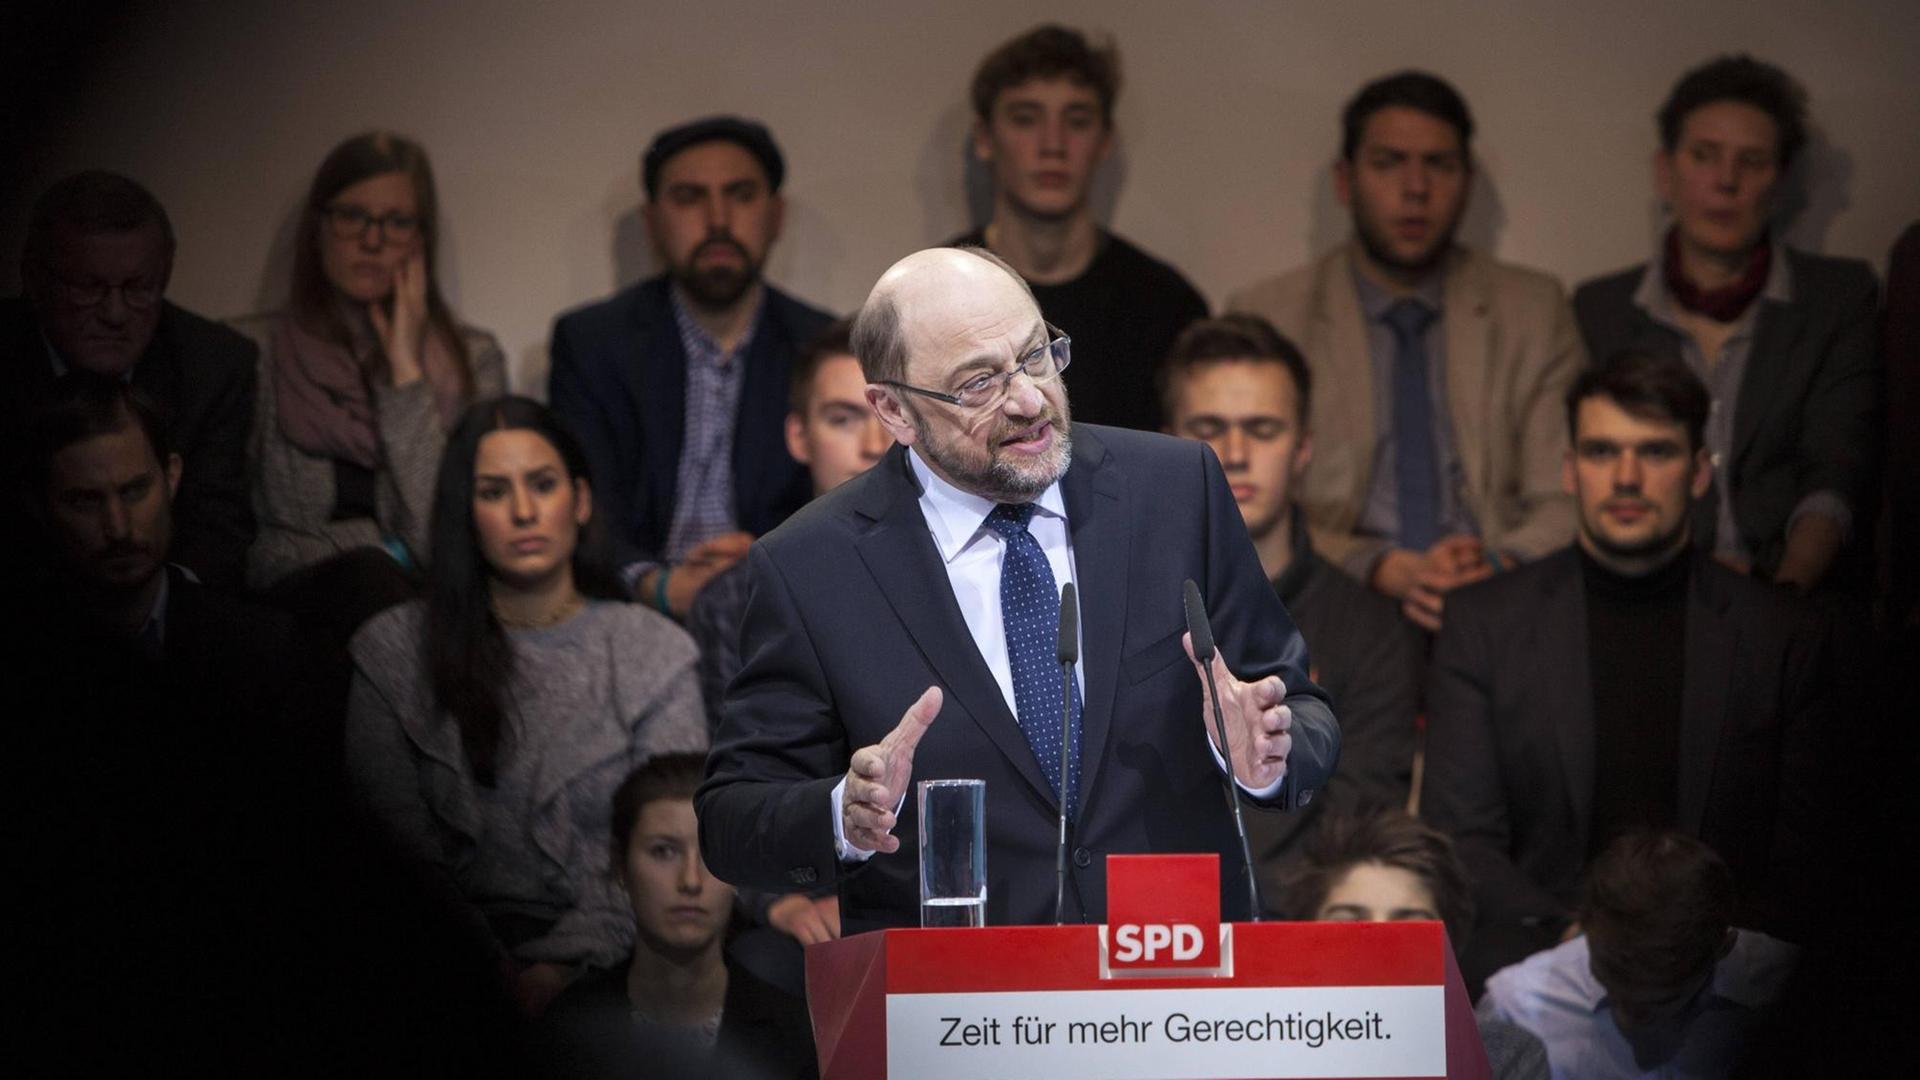 Martin Schulz hält eine Rede, hinter ihm sitzen Menschen